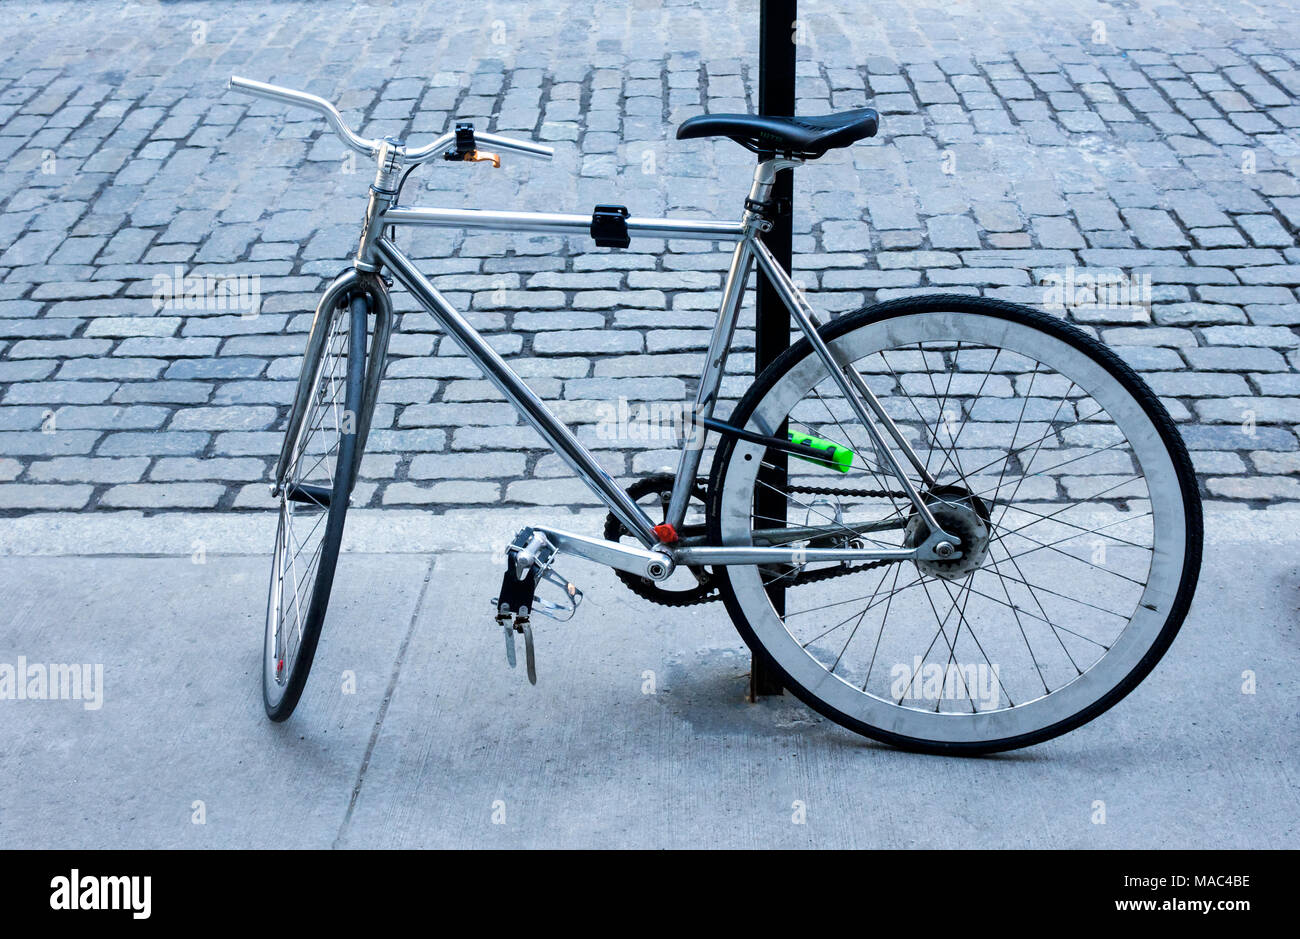 Der Mann mit dem Fahrrad auf einen Post auf einer gepflasterten Straße in New York City gesichert Stockfoto